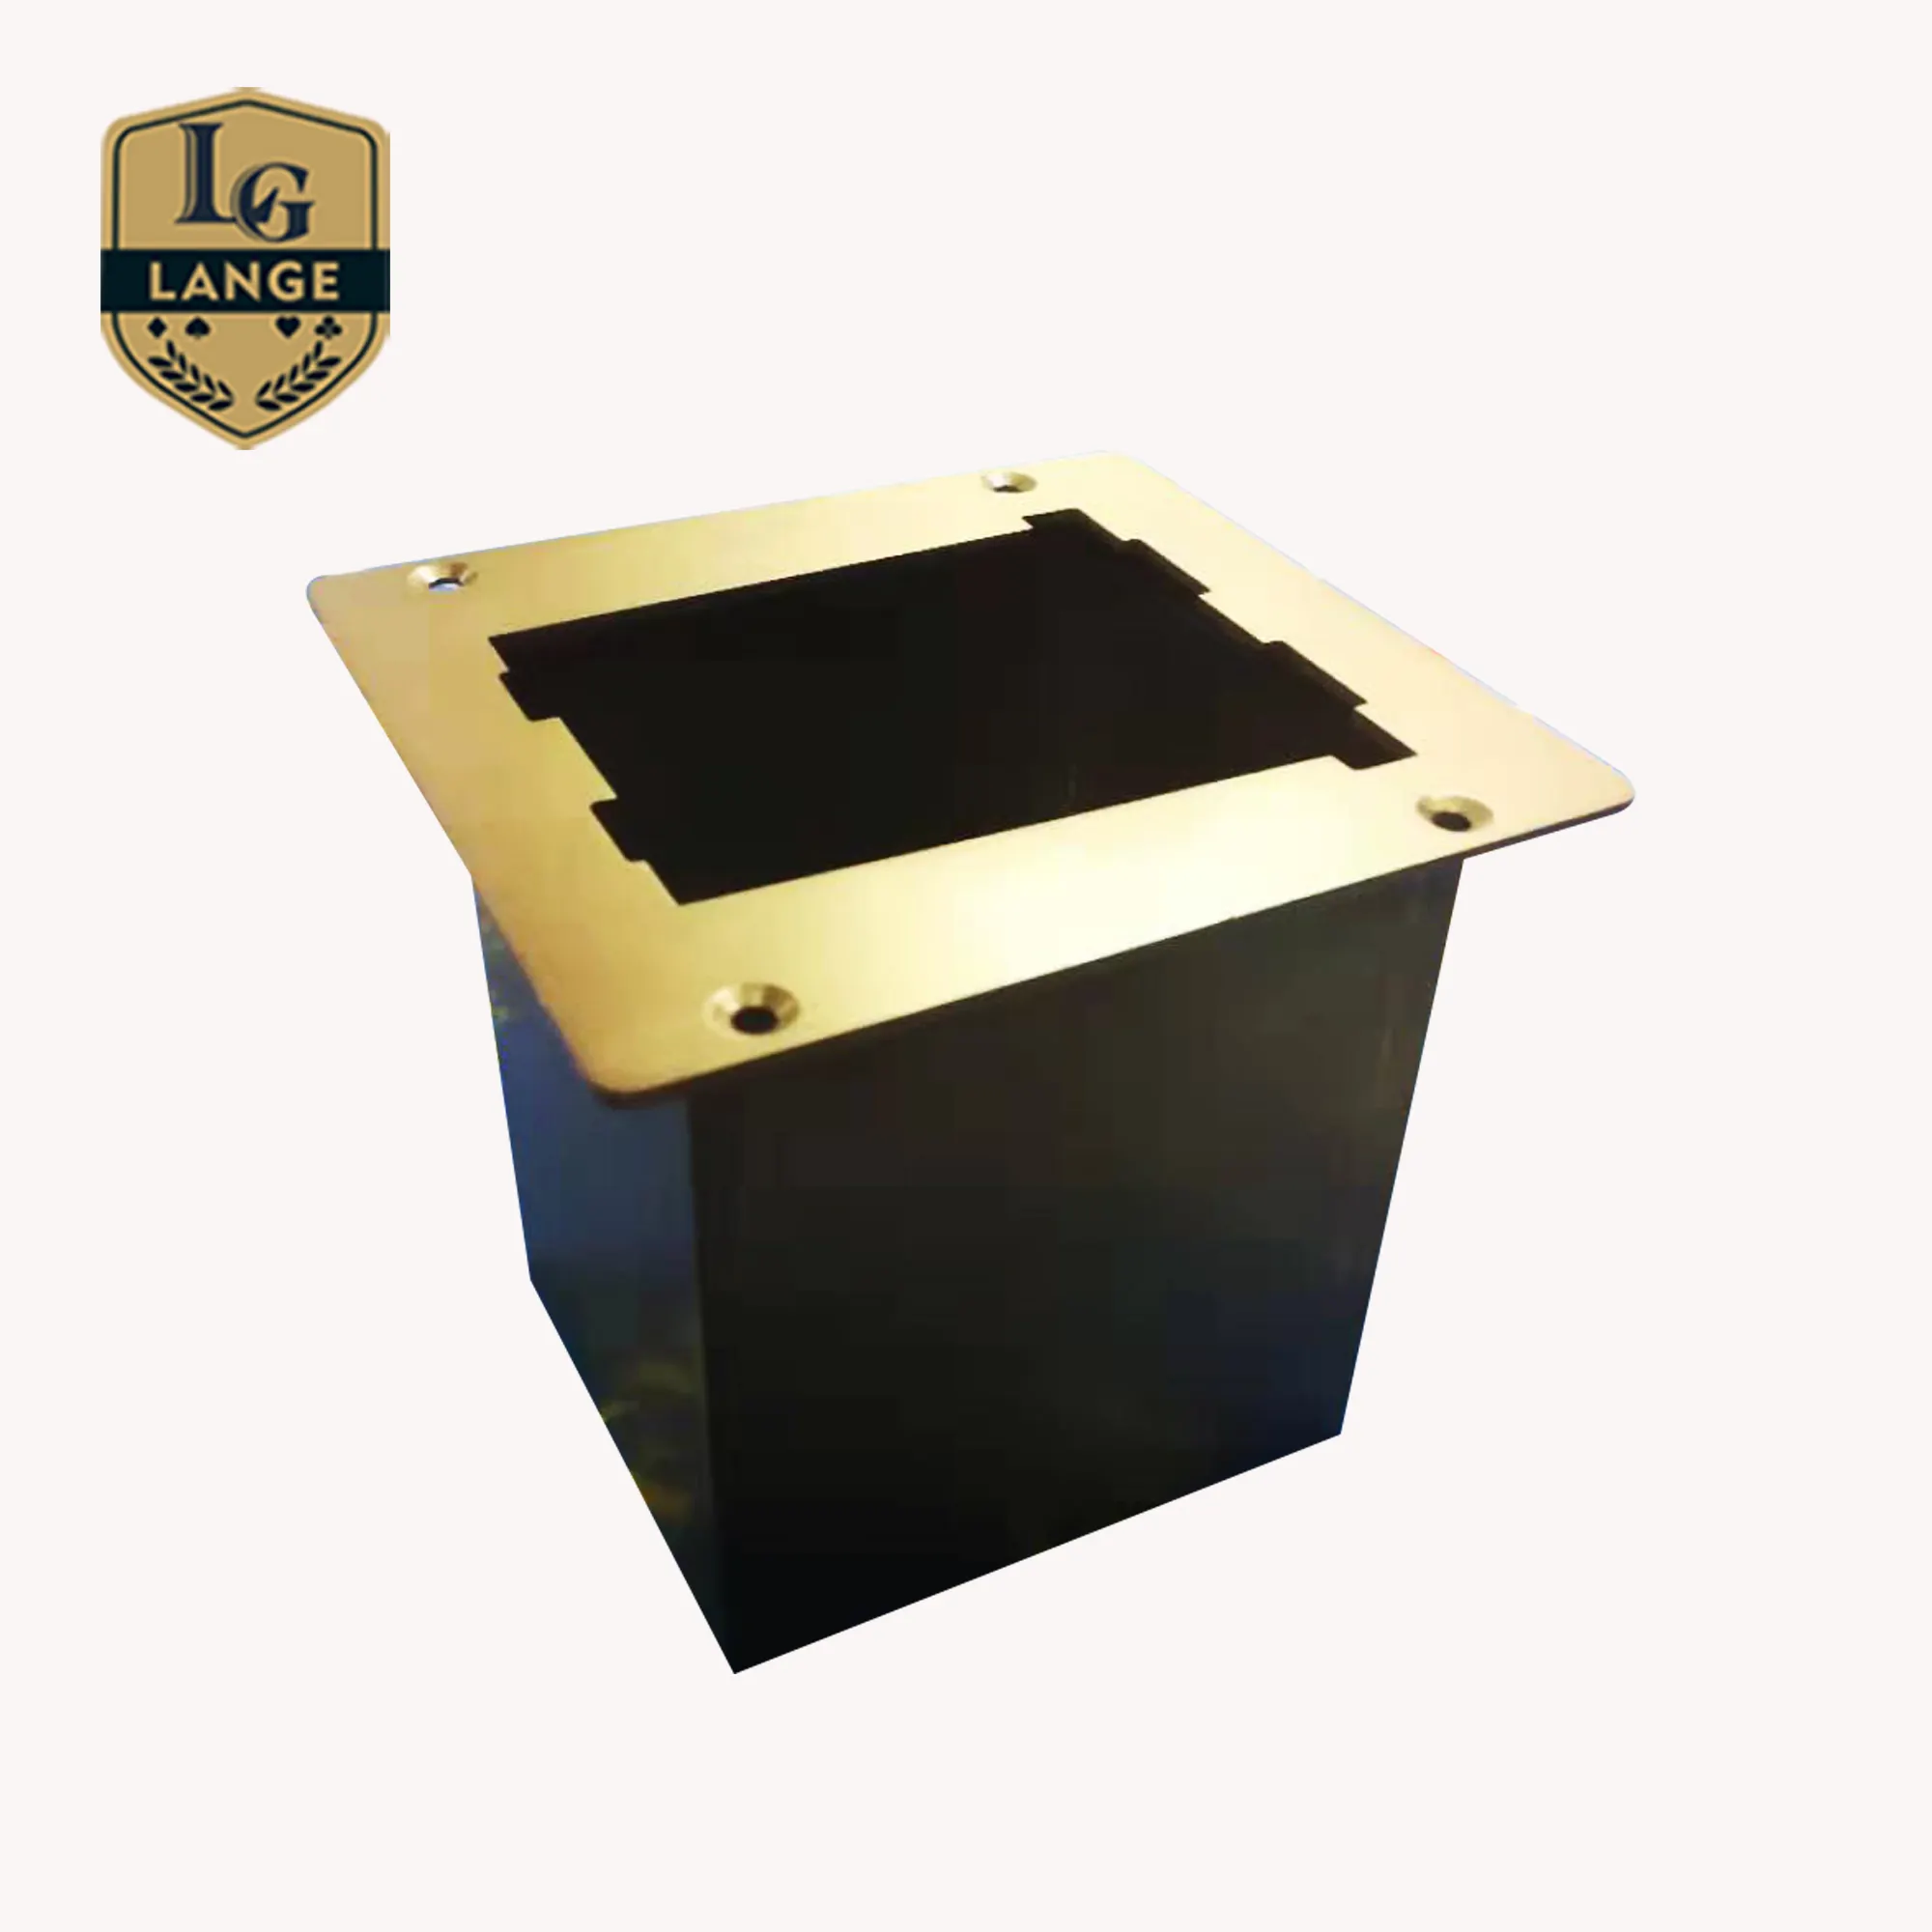 Caixa de suporte para descartáveis de cassino, caixa de metal personalizada avançada para baccarat Texas Hold'em